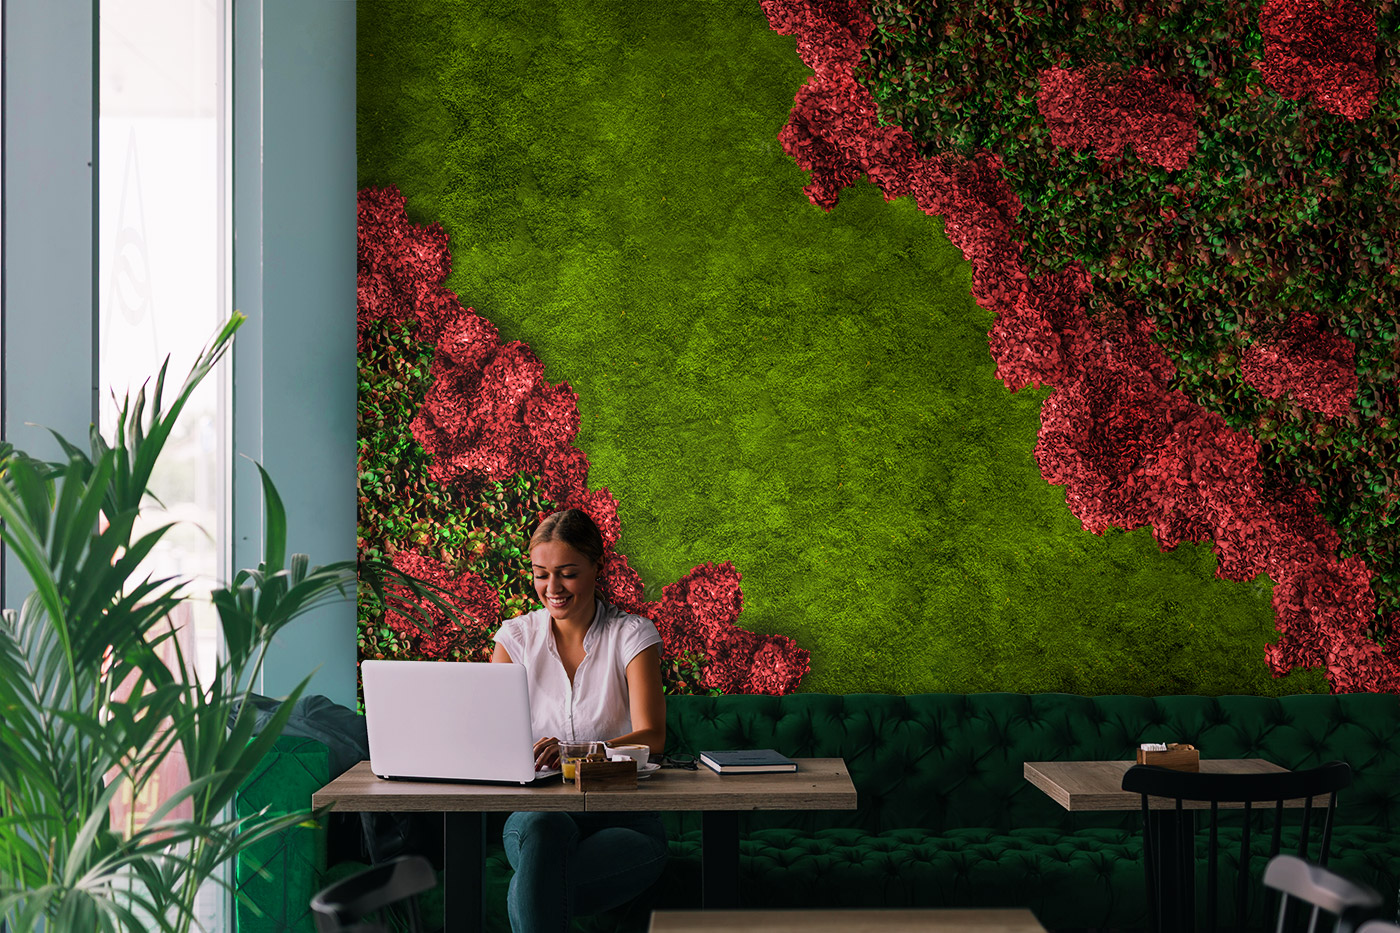 Mooswand mit Hortensien und Pflanzen in einem Caffee und im Vordergrund sitzt eine Frau